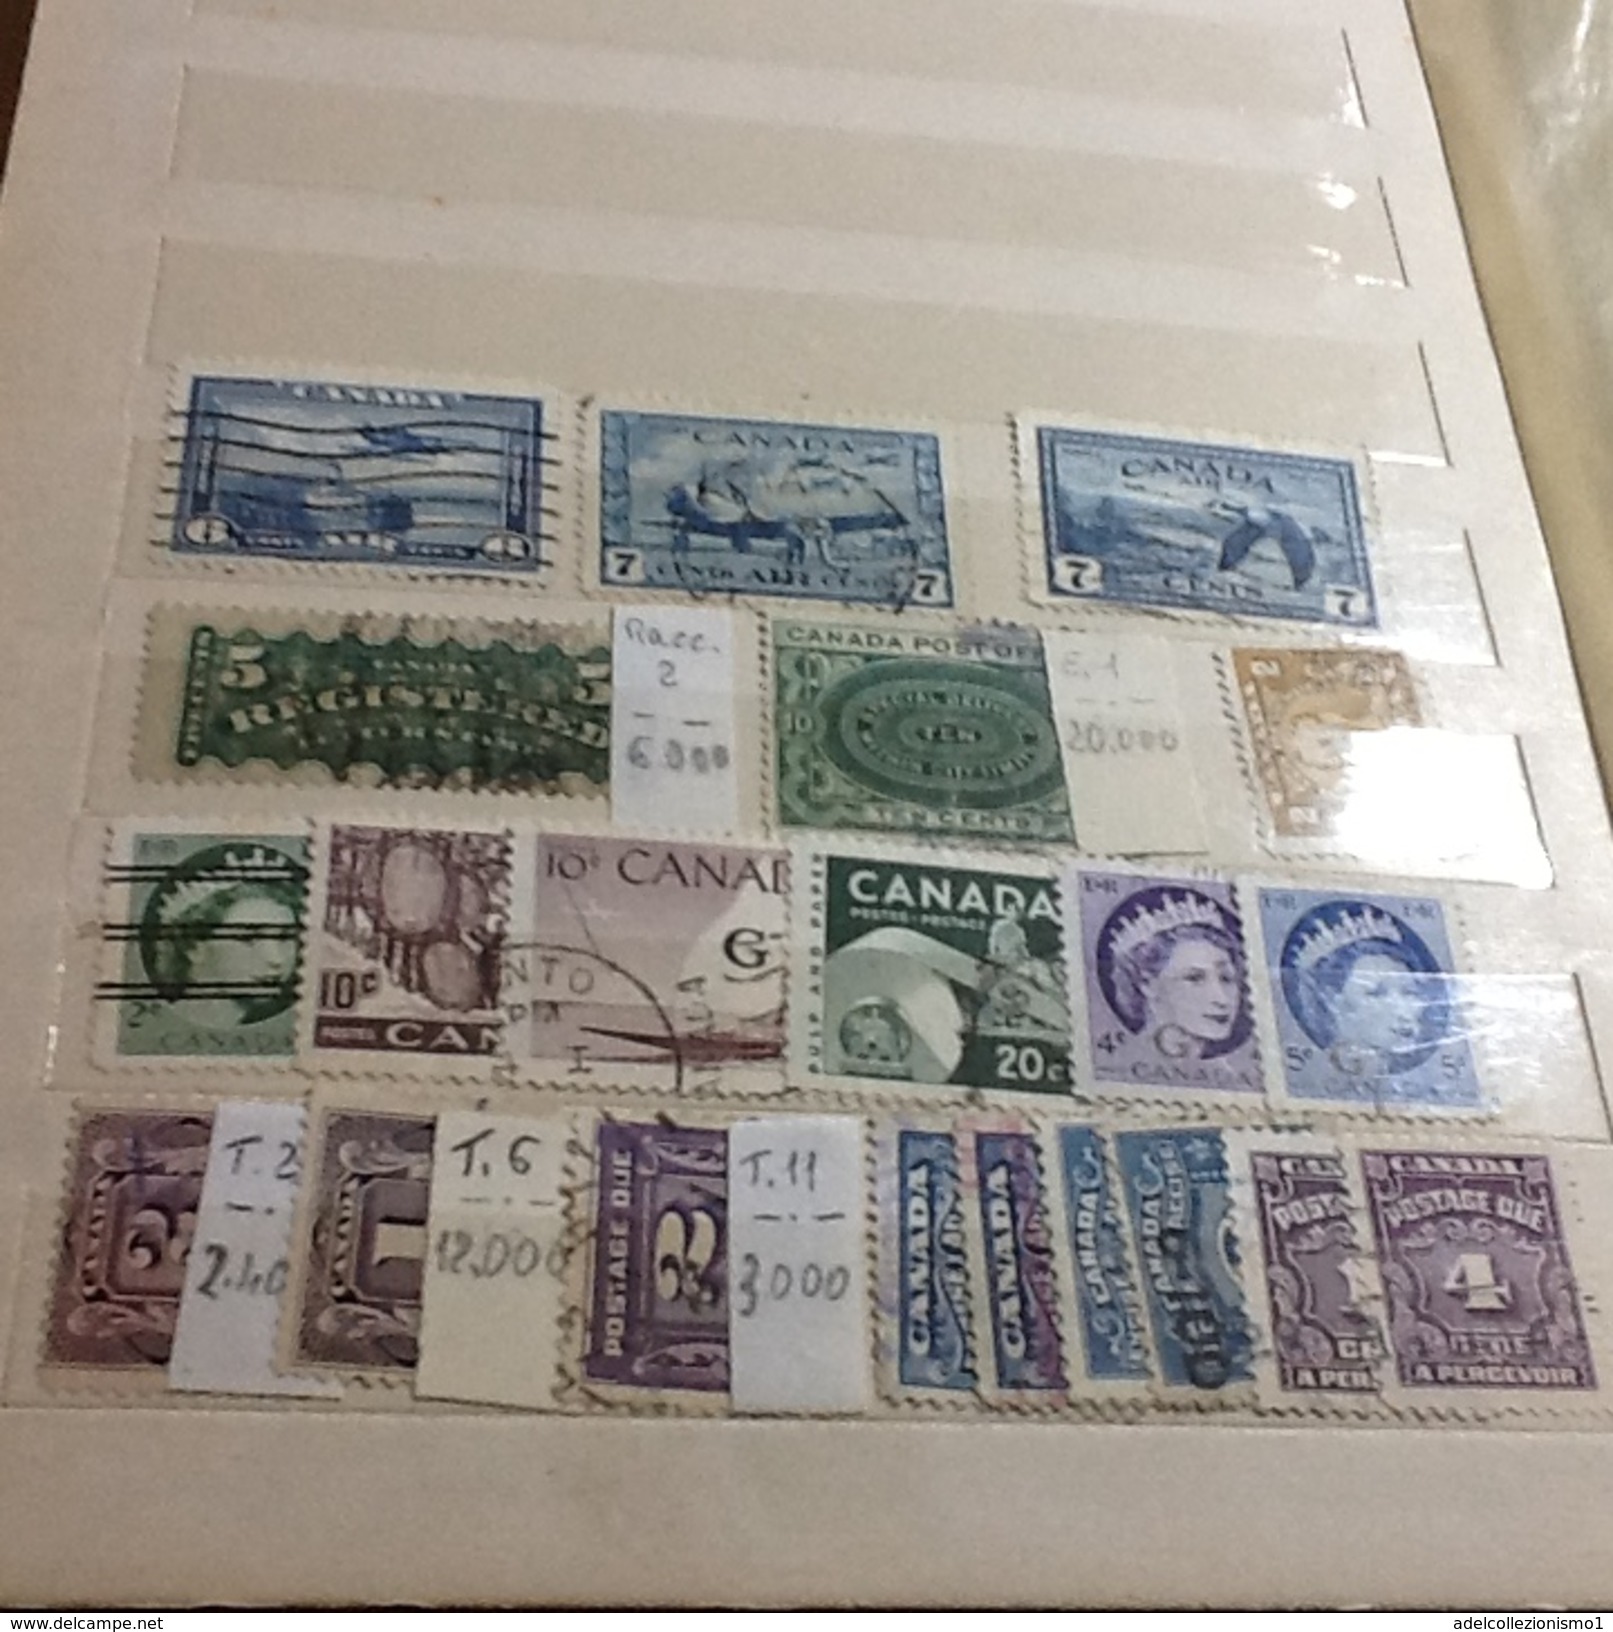 lotto di francobolli usati del canadà in album cat.450 &euro;